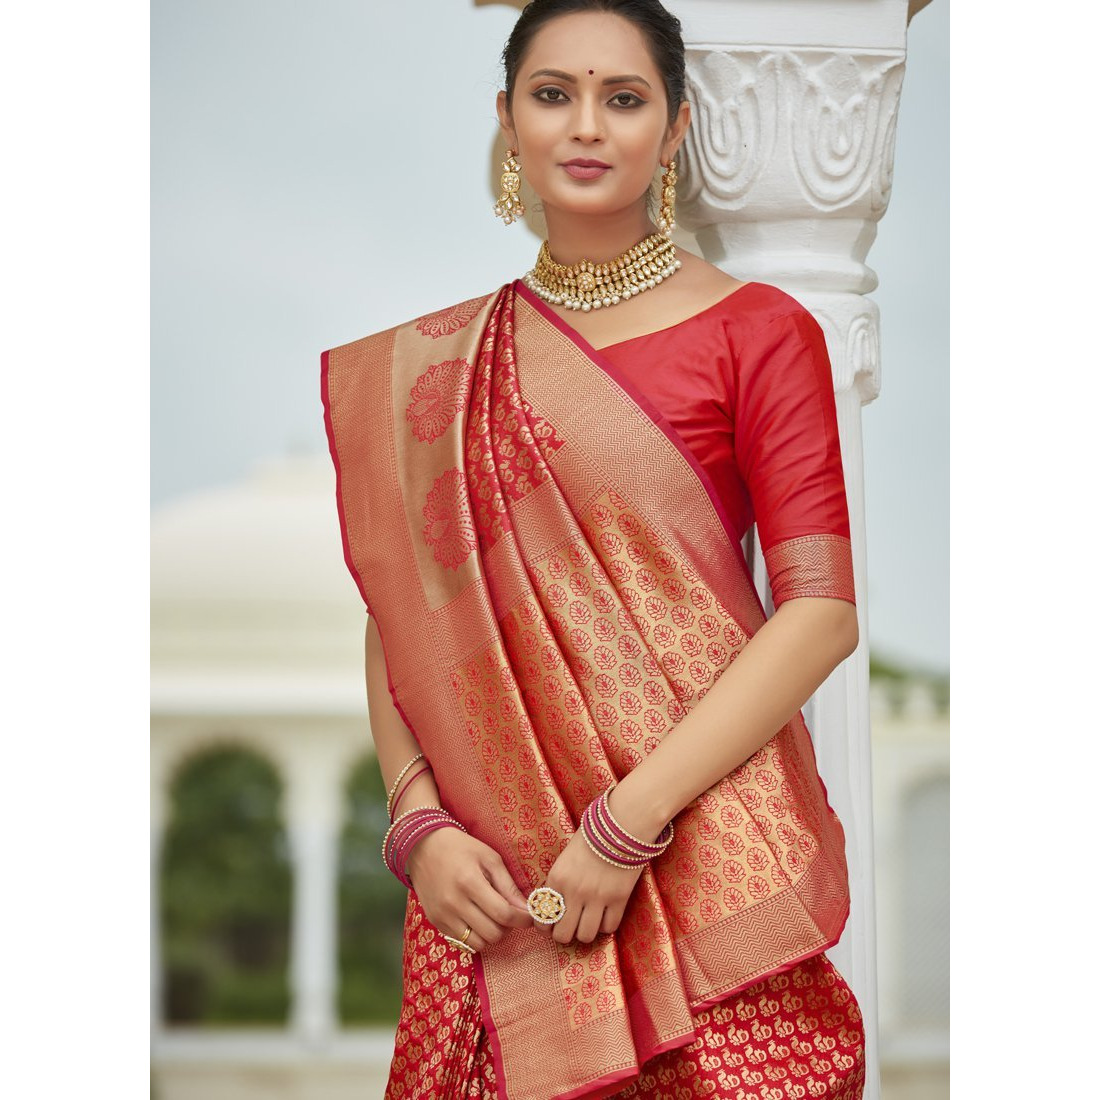 Designer Red Silk Wedding Wear Saree For Women